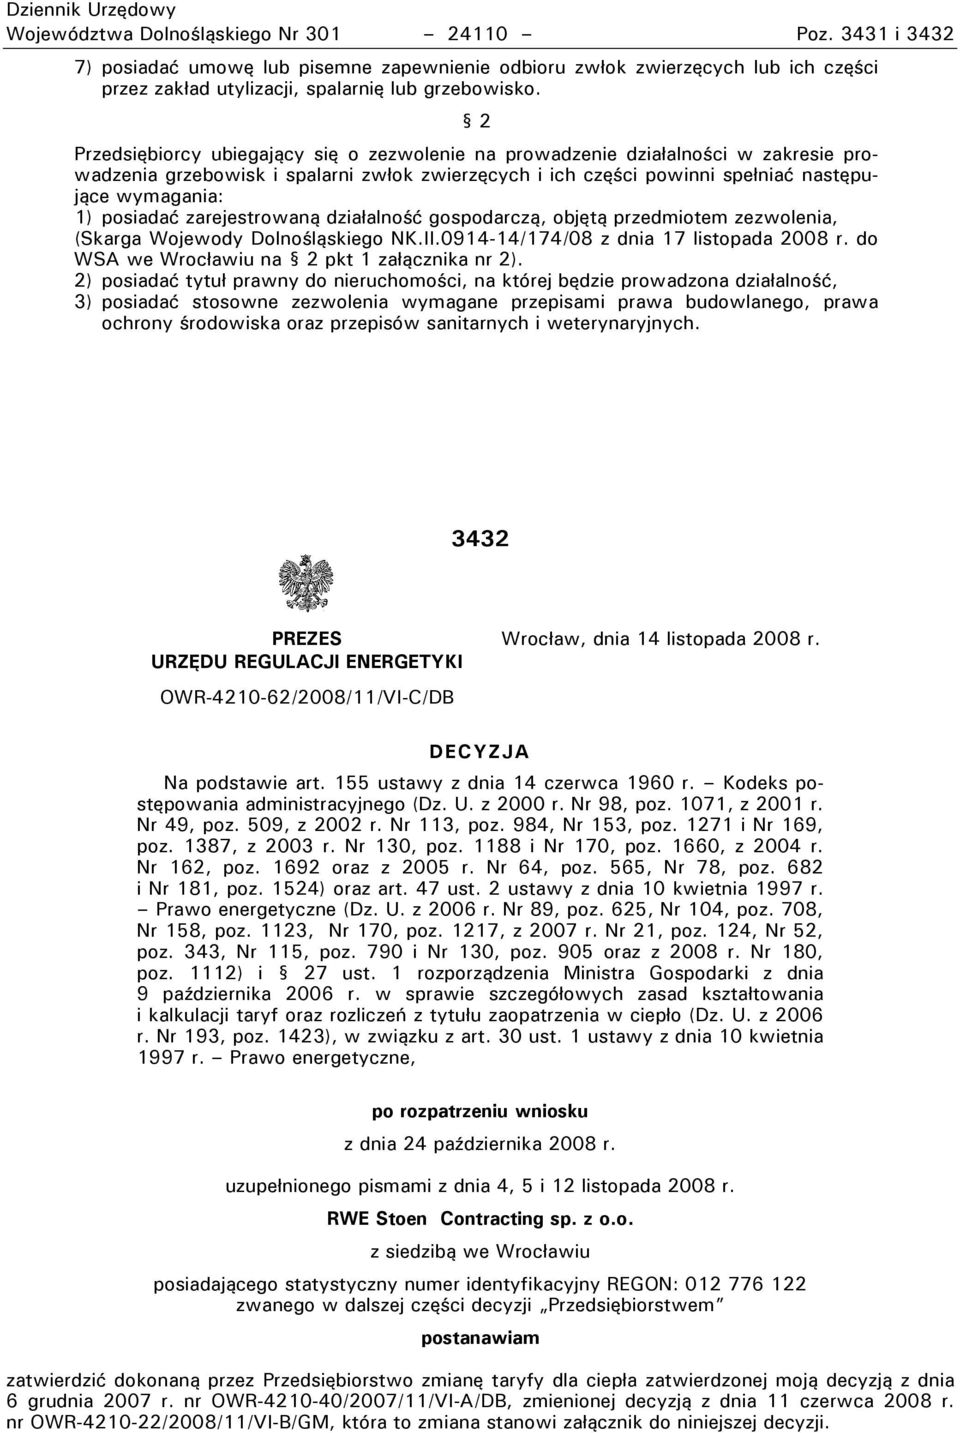 posiadać zarejestrowaną działalność gospodarczą, objętą przedmiotem zezwolenia, (Skarga ojewody Dolnośląskiego NK.II.0914-14/174/08 z dnia 17 listopada 2008 r.